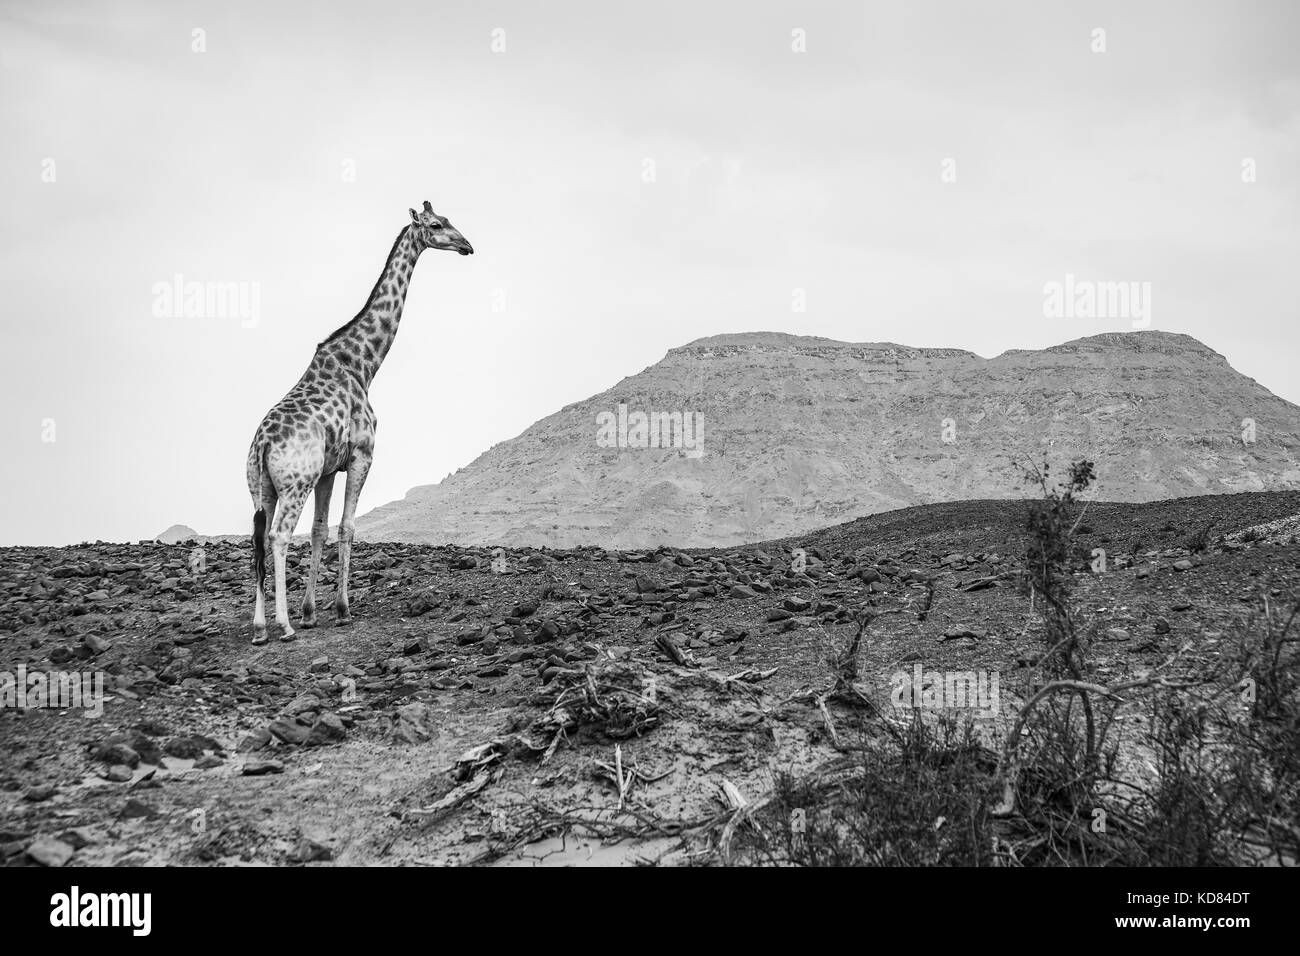 Girafe (Giraffa angolais giraffa angolensis), également connu sous le nom de girafe namibienne, debout dans un paysage aride, Désert du Namib, Namibie, Afrique du sud-ouest Banque D'Images